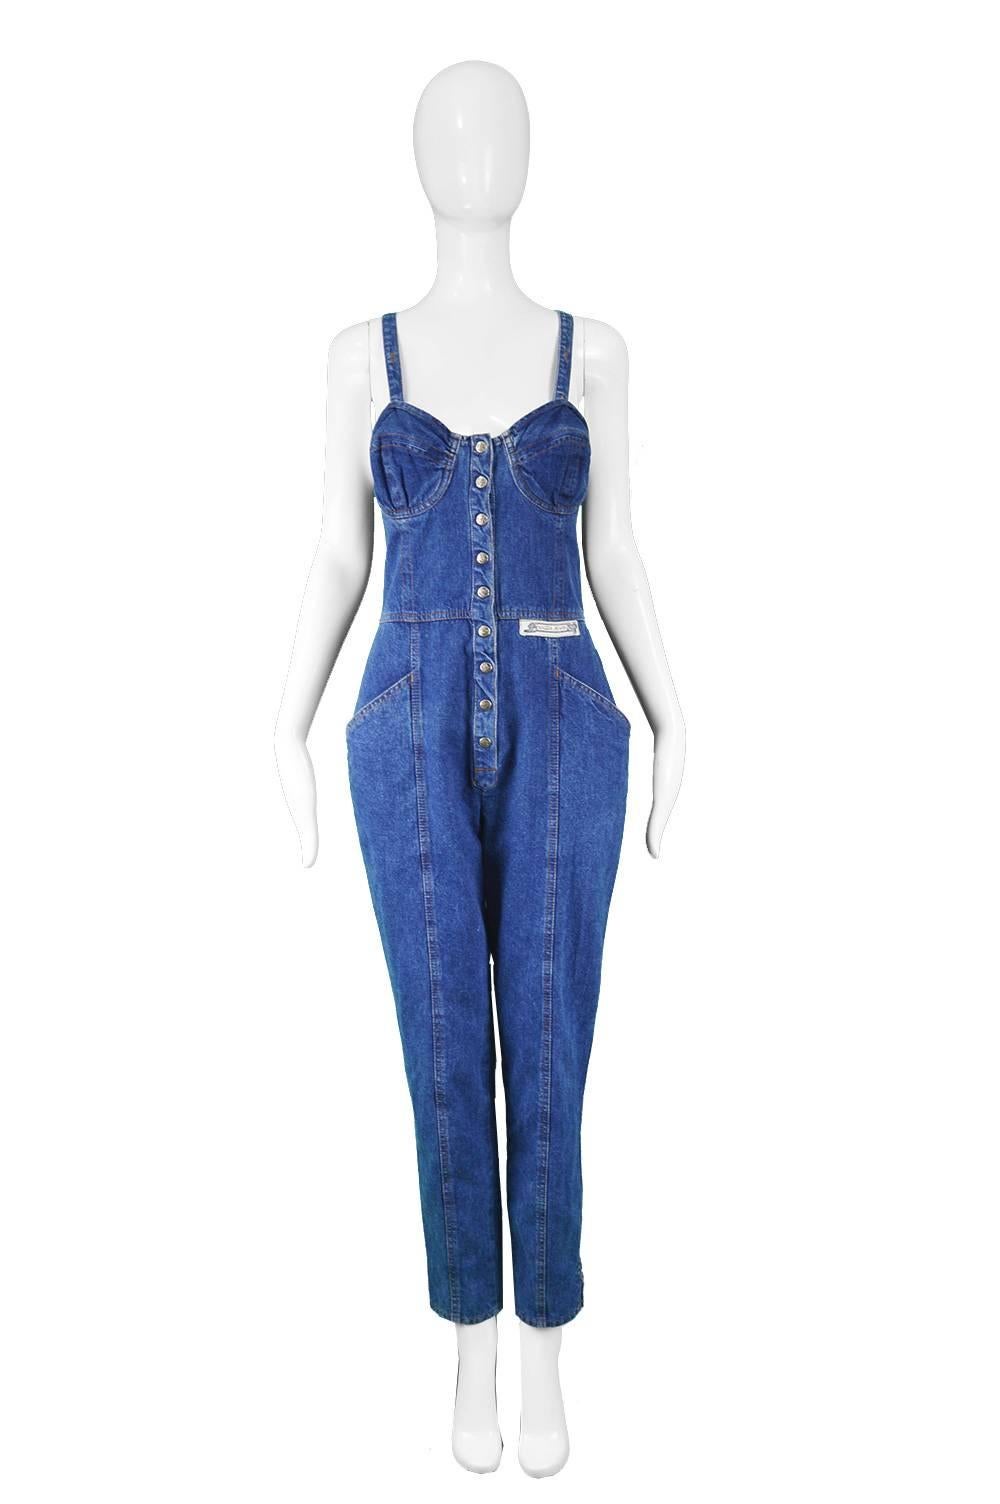 Krizia Jeans Vintage Blue Underwired Denim Dungaree Jumpsuit, 1990s

Estimated Size: UK 10/ US 6/ EU 38. Please check measurements.
Bust - 34” / 86cm
Waist - 28” / 71cm
Hips - 38” / 96cm
Length (Shoulder to Hem) - 56” / 142cm
Inside Leg - 28” /